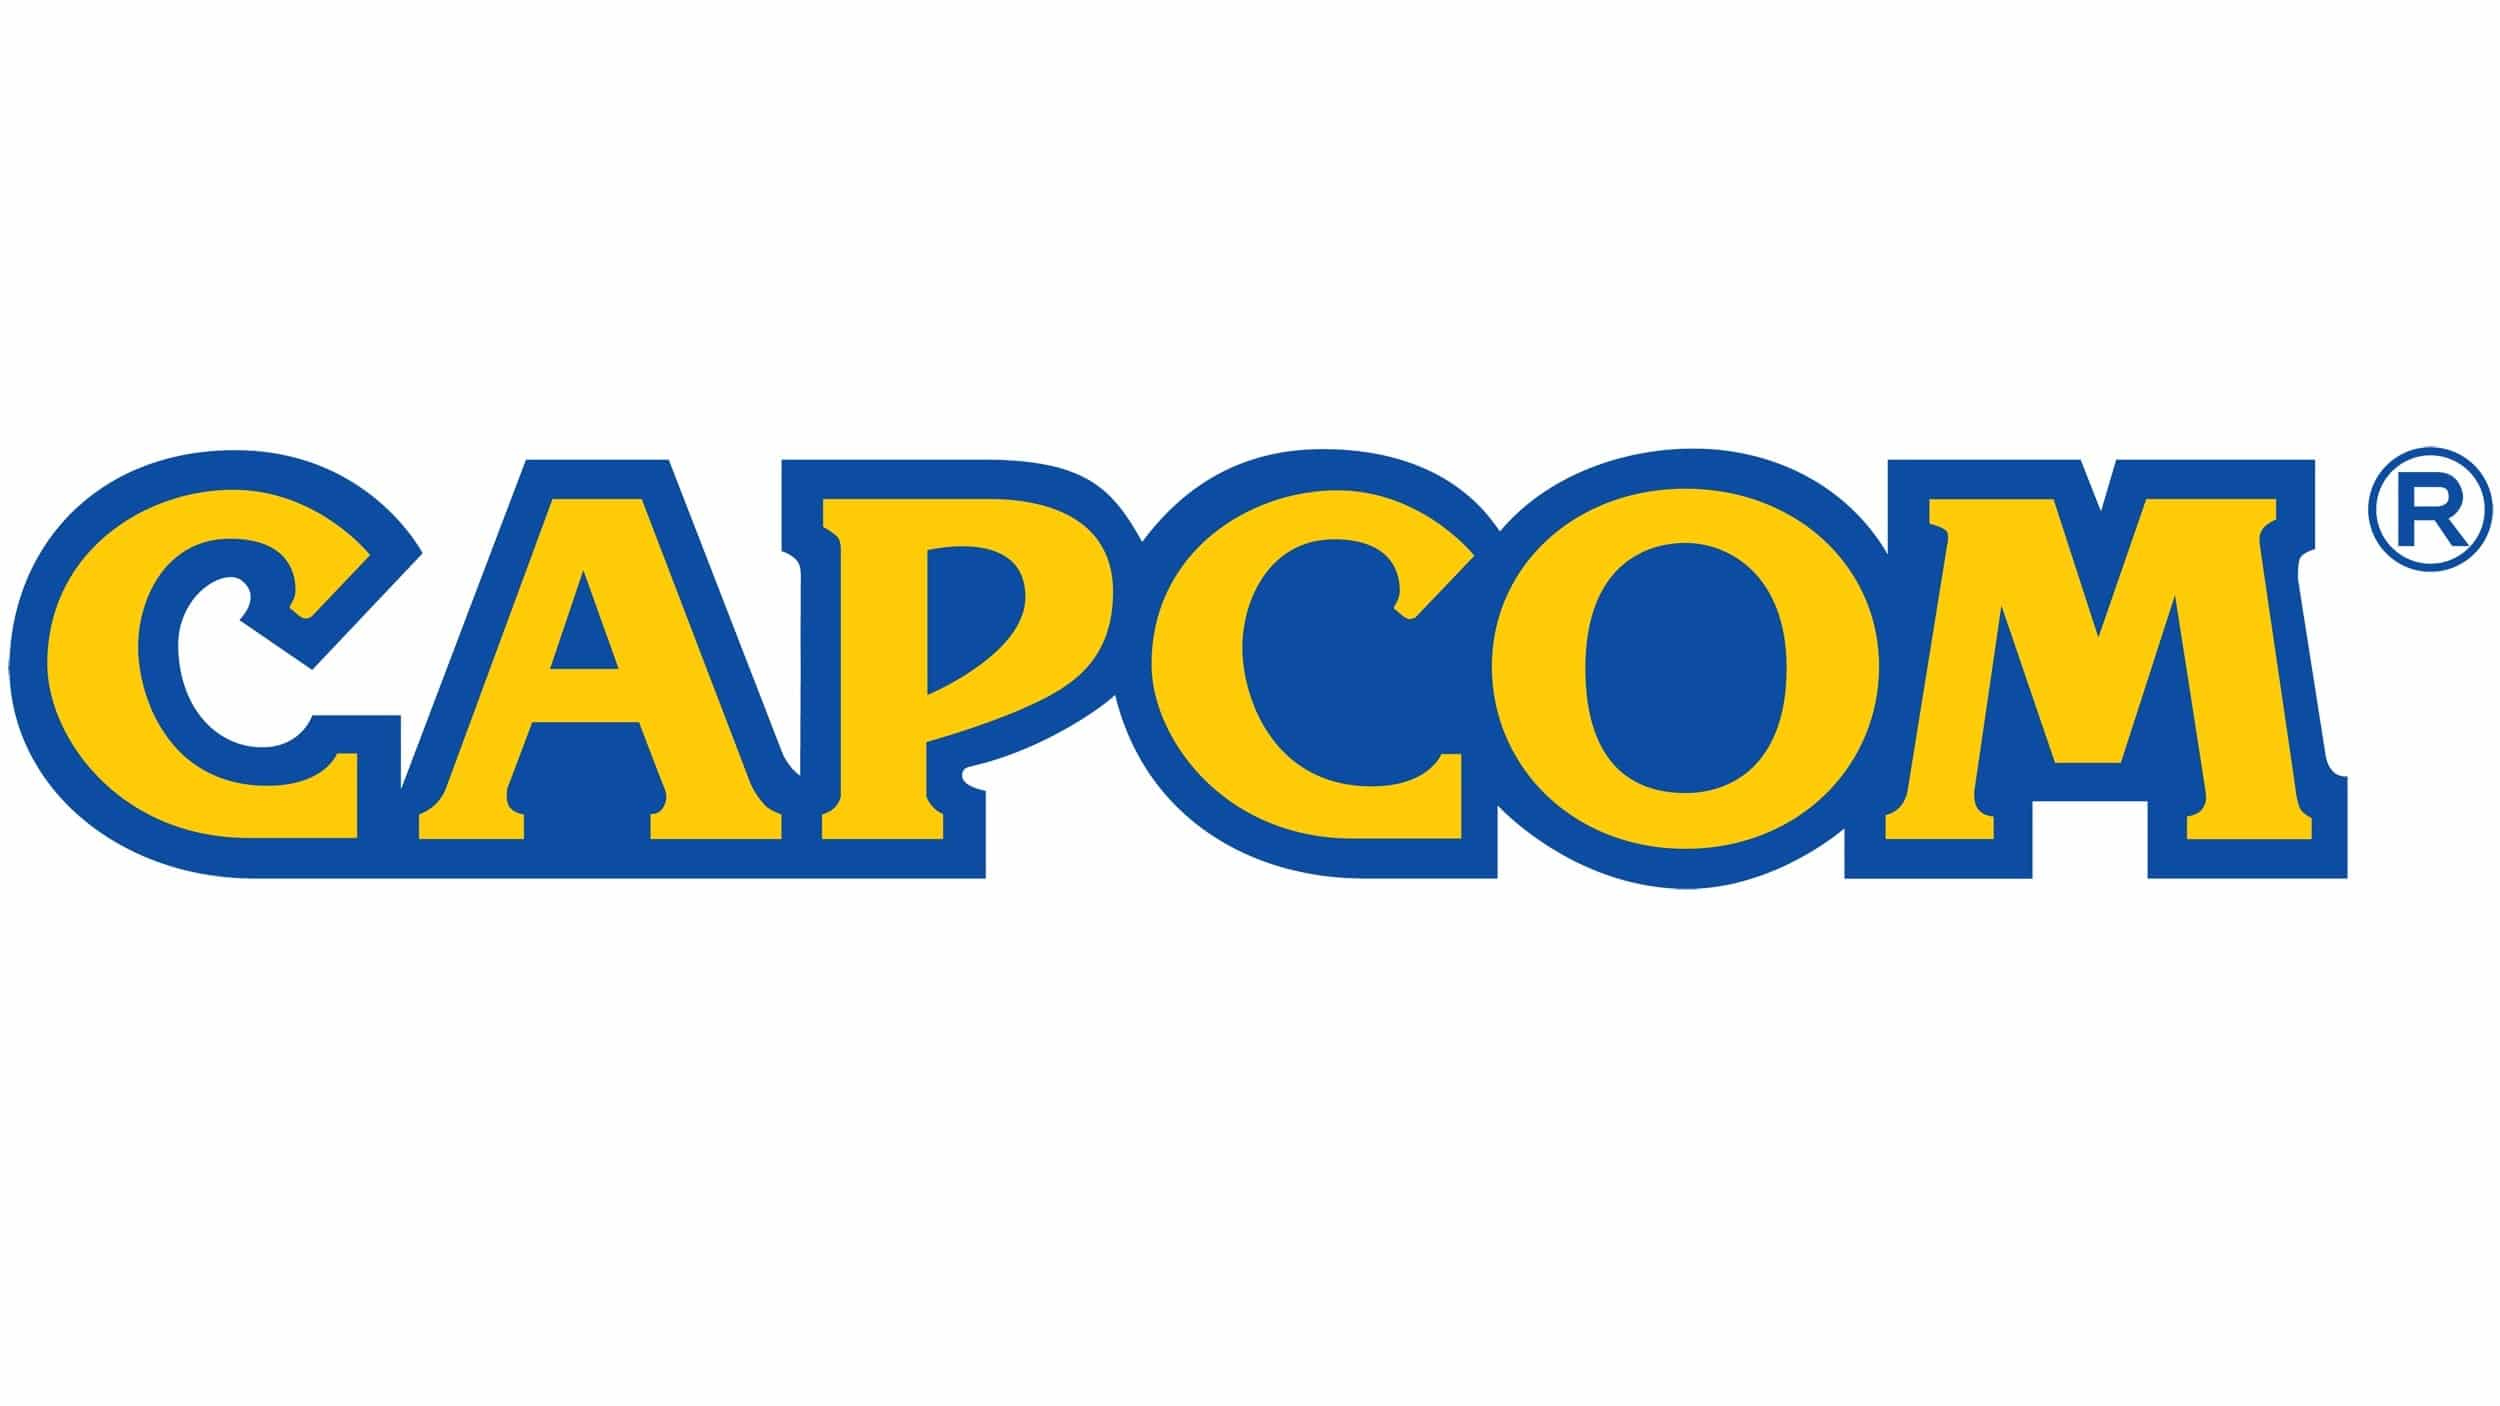 Capcom publica las normas que deben seguir los creadores de contenido en plataformas como YouTube o Twitch